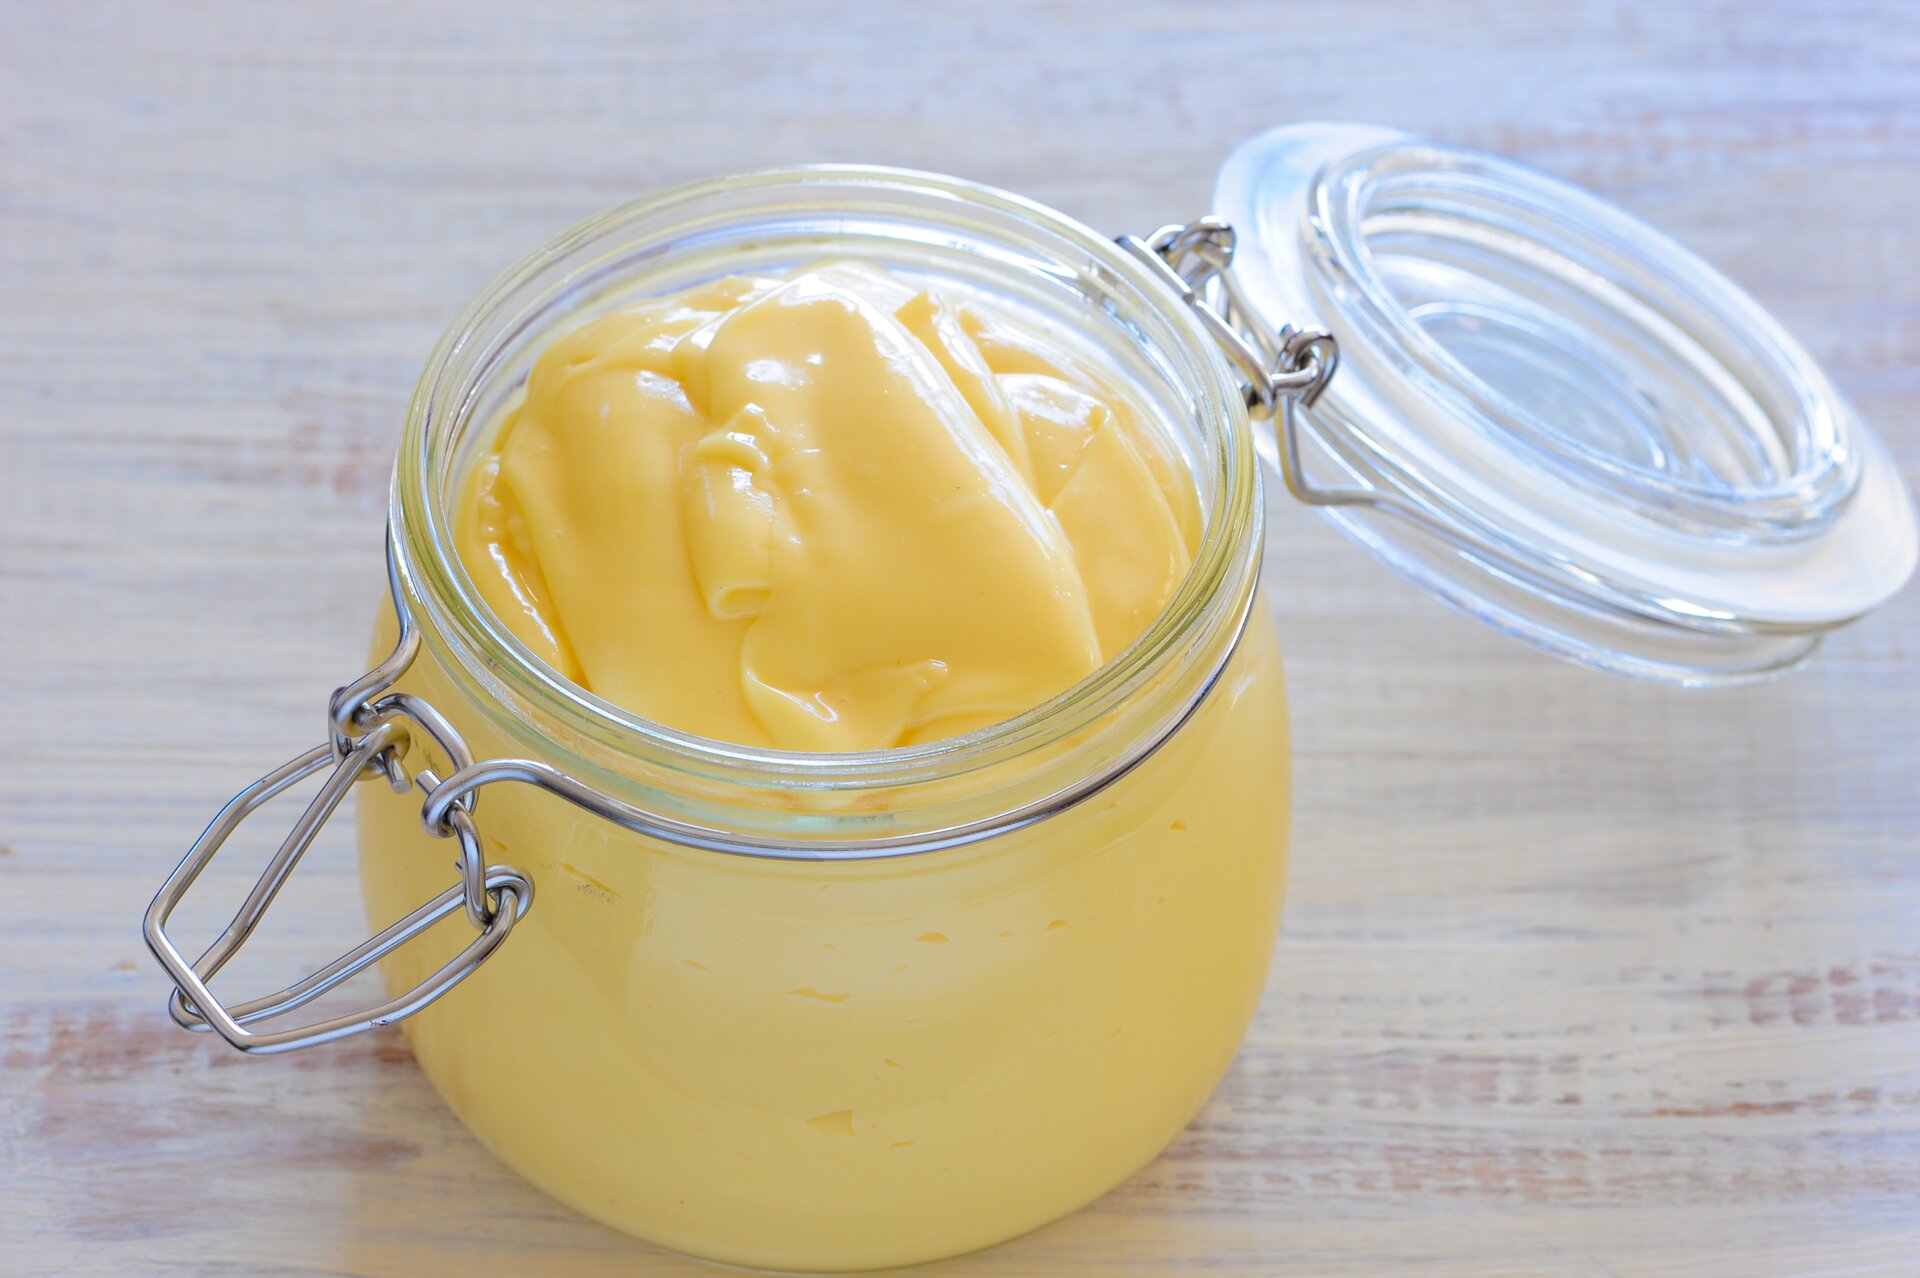 Majonez to przykład emulsji przygotowanej przez zmieszanie m.in. oleju i żółtek jaj. Zawarta w żółtkach lecytyna pełni rolę emulgatora